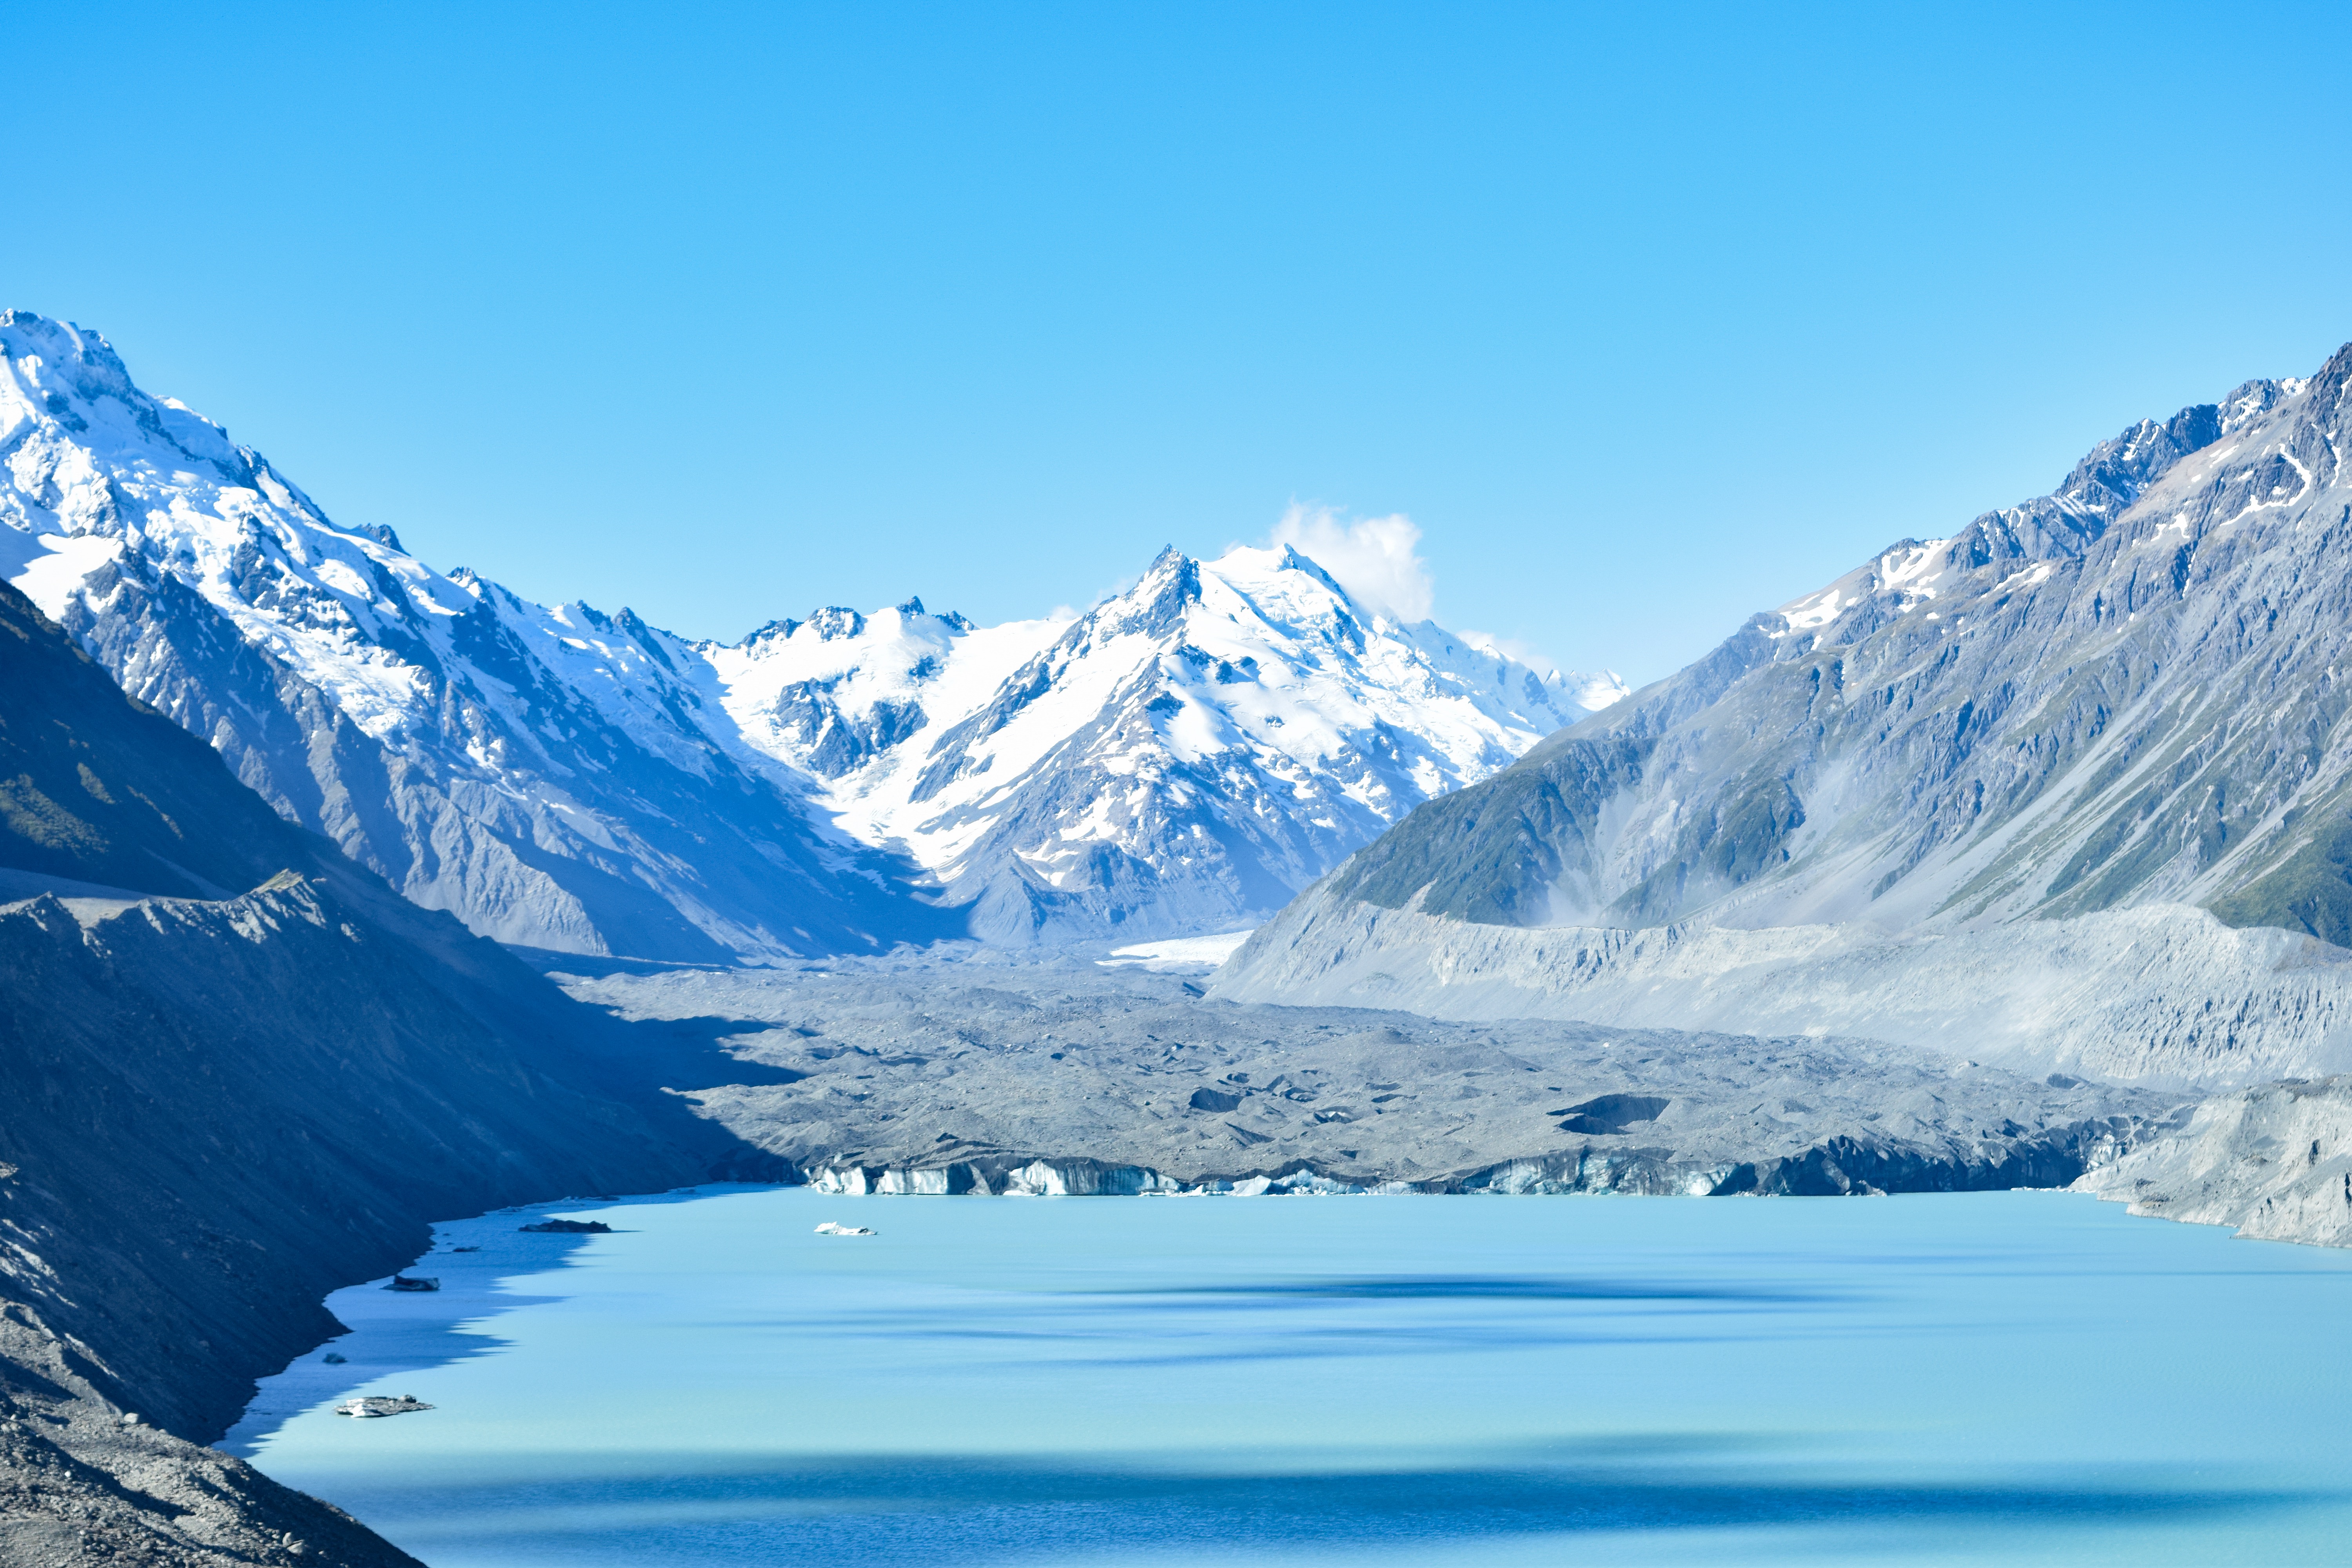 ニュージーランド 目の前で氷河が崩壊 タスマン氷河 で感じる日本とは一味違う大自然